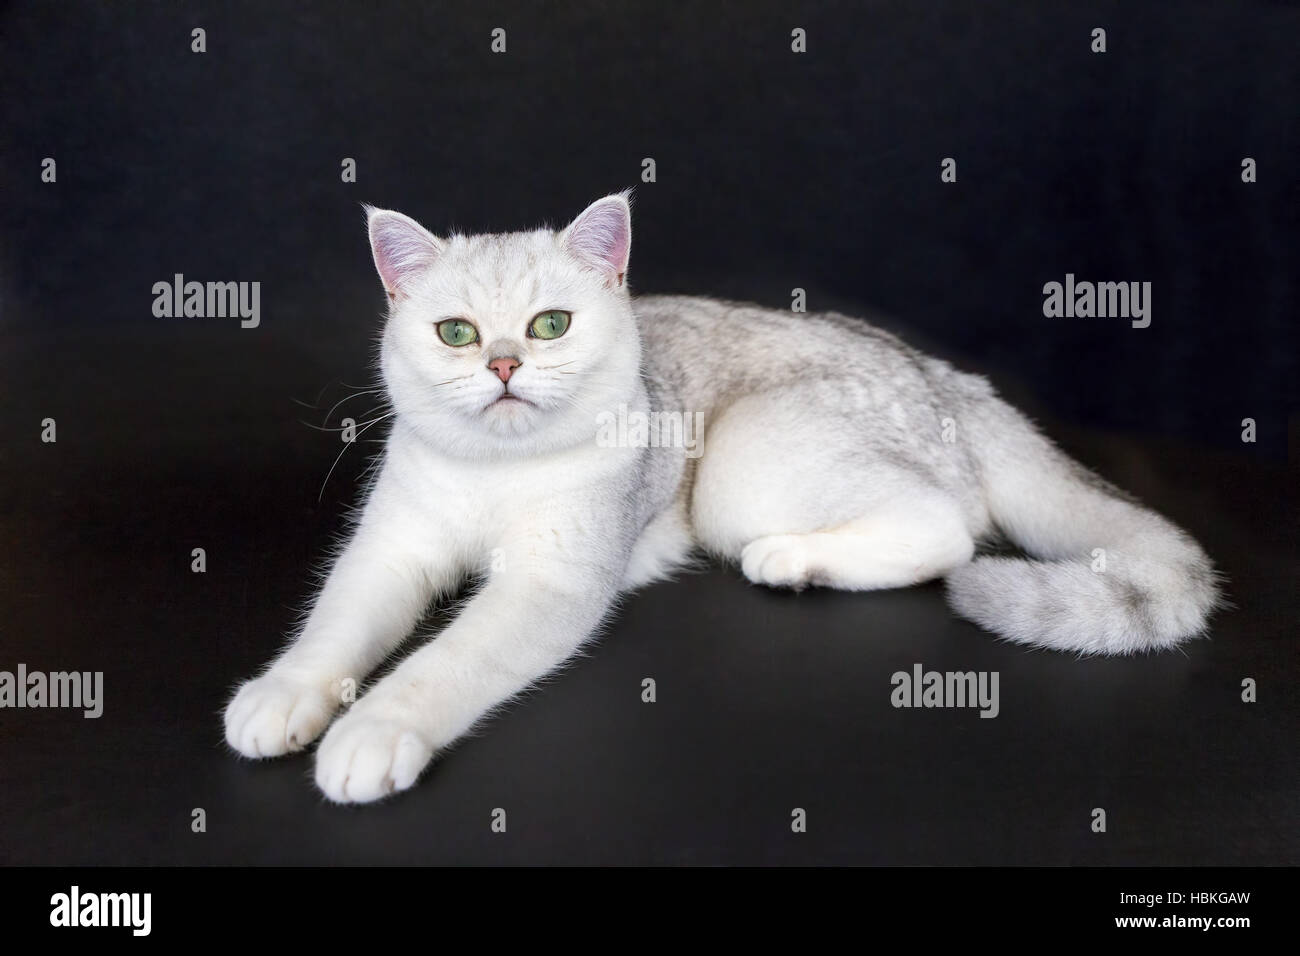 White cat lying on isolated black background Stock Photo